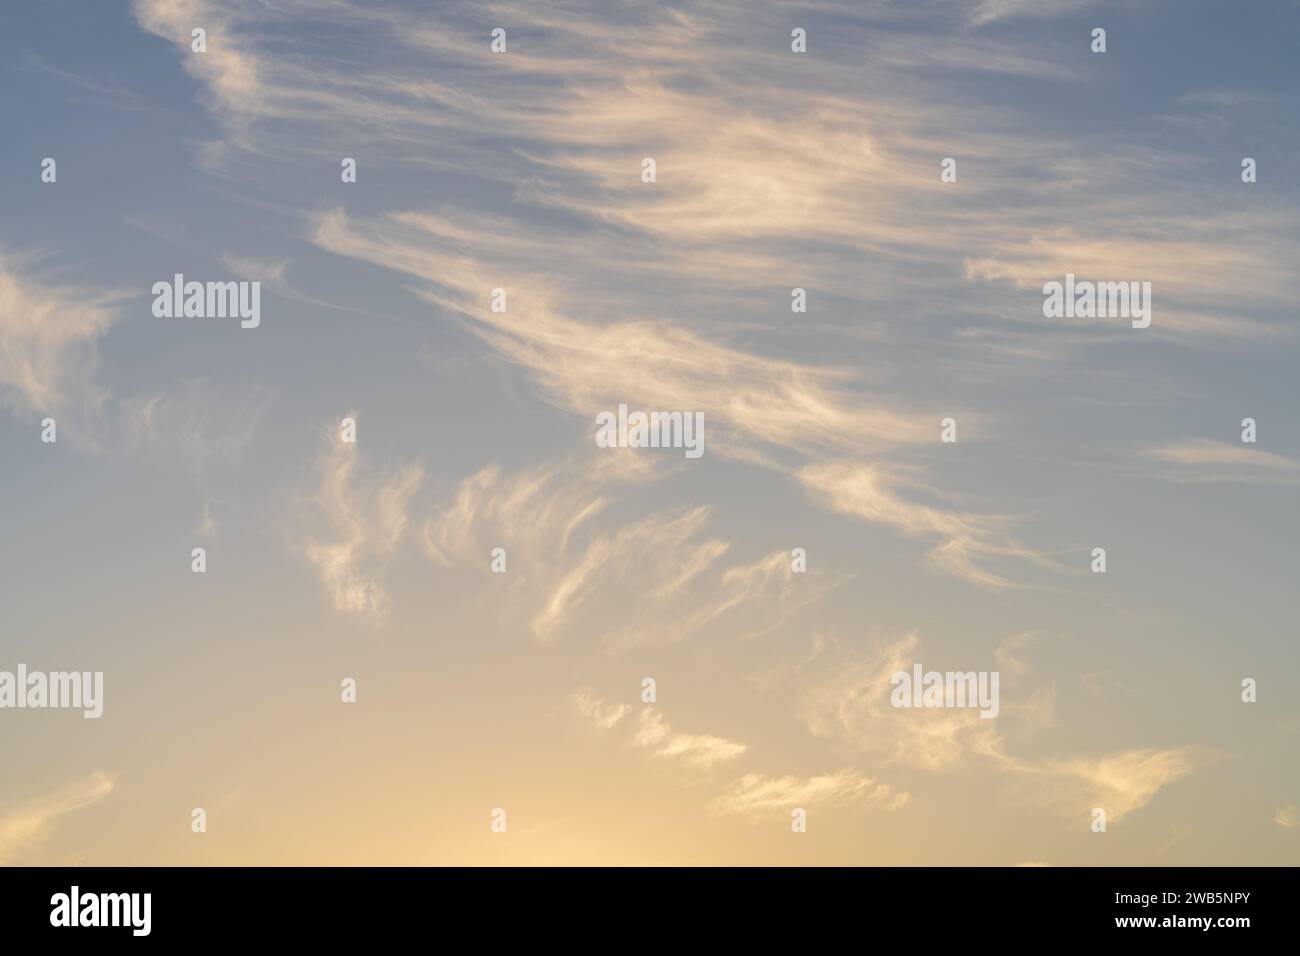 Sky Images für redaktionelle, Werbe- oder grafische Anwendungen. Stockfoto